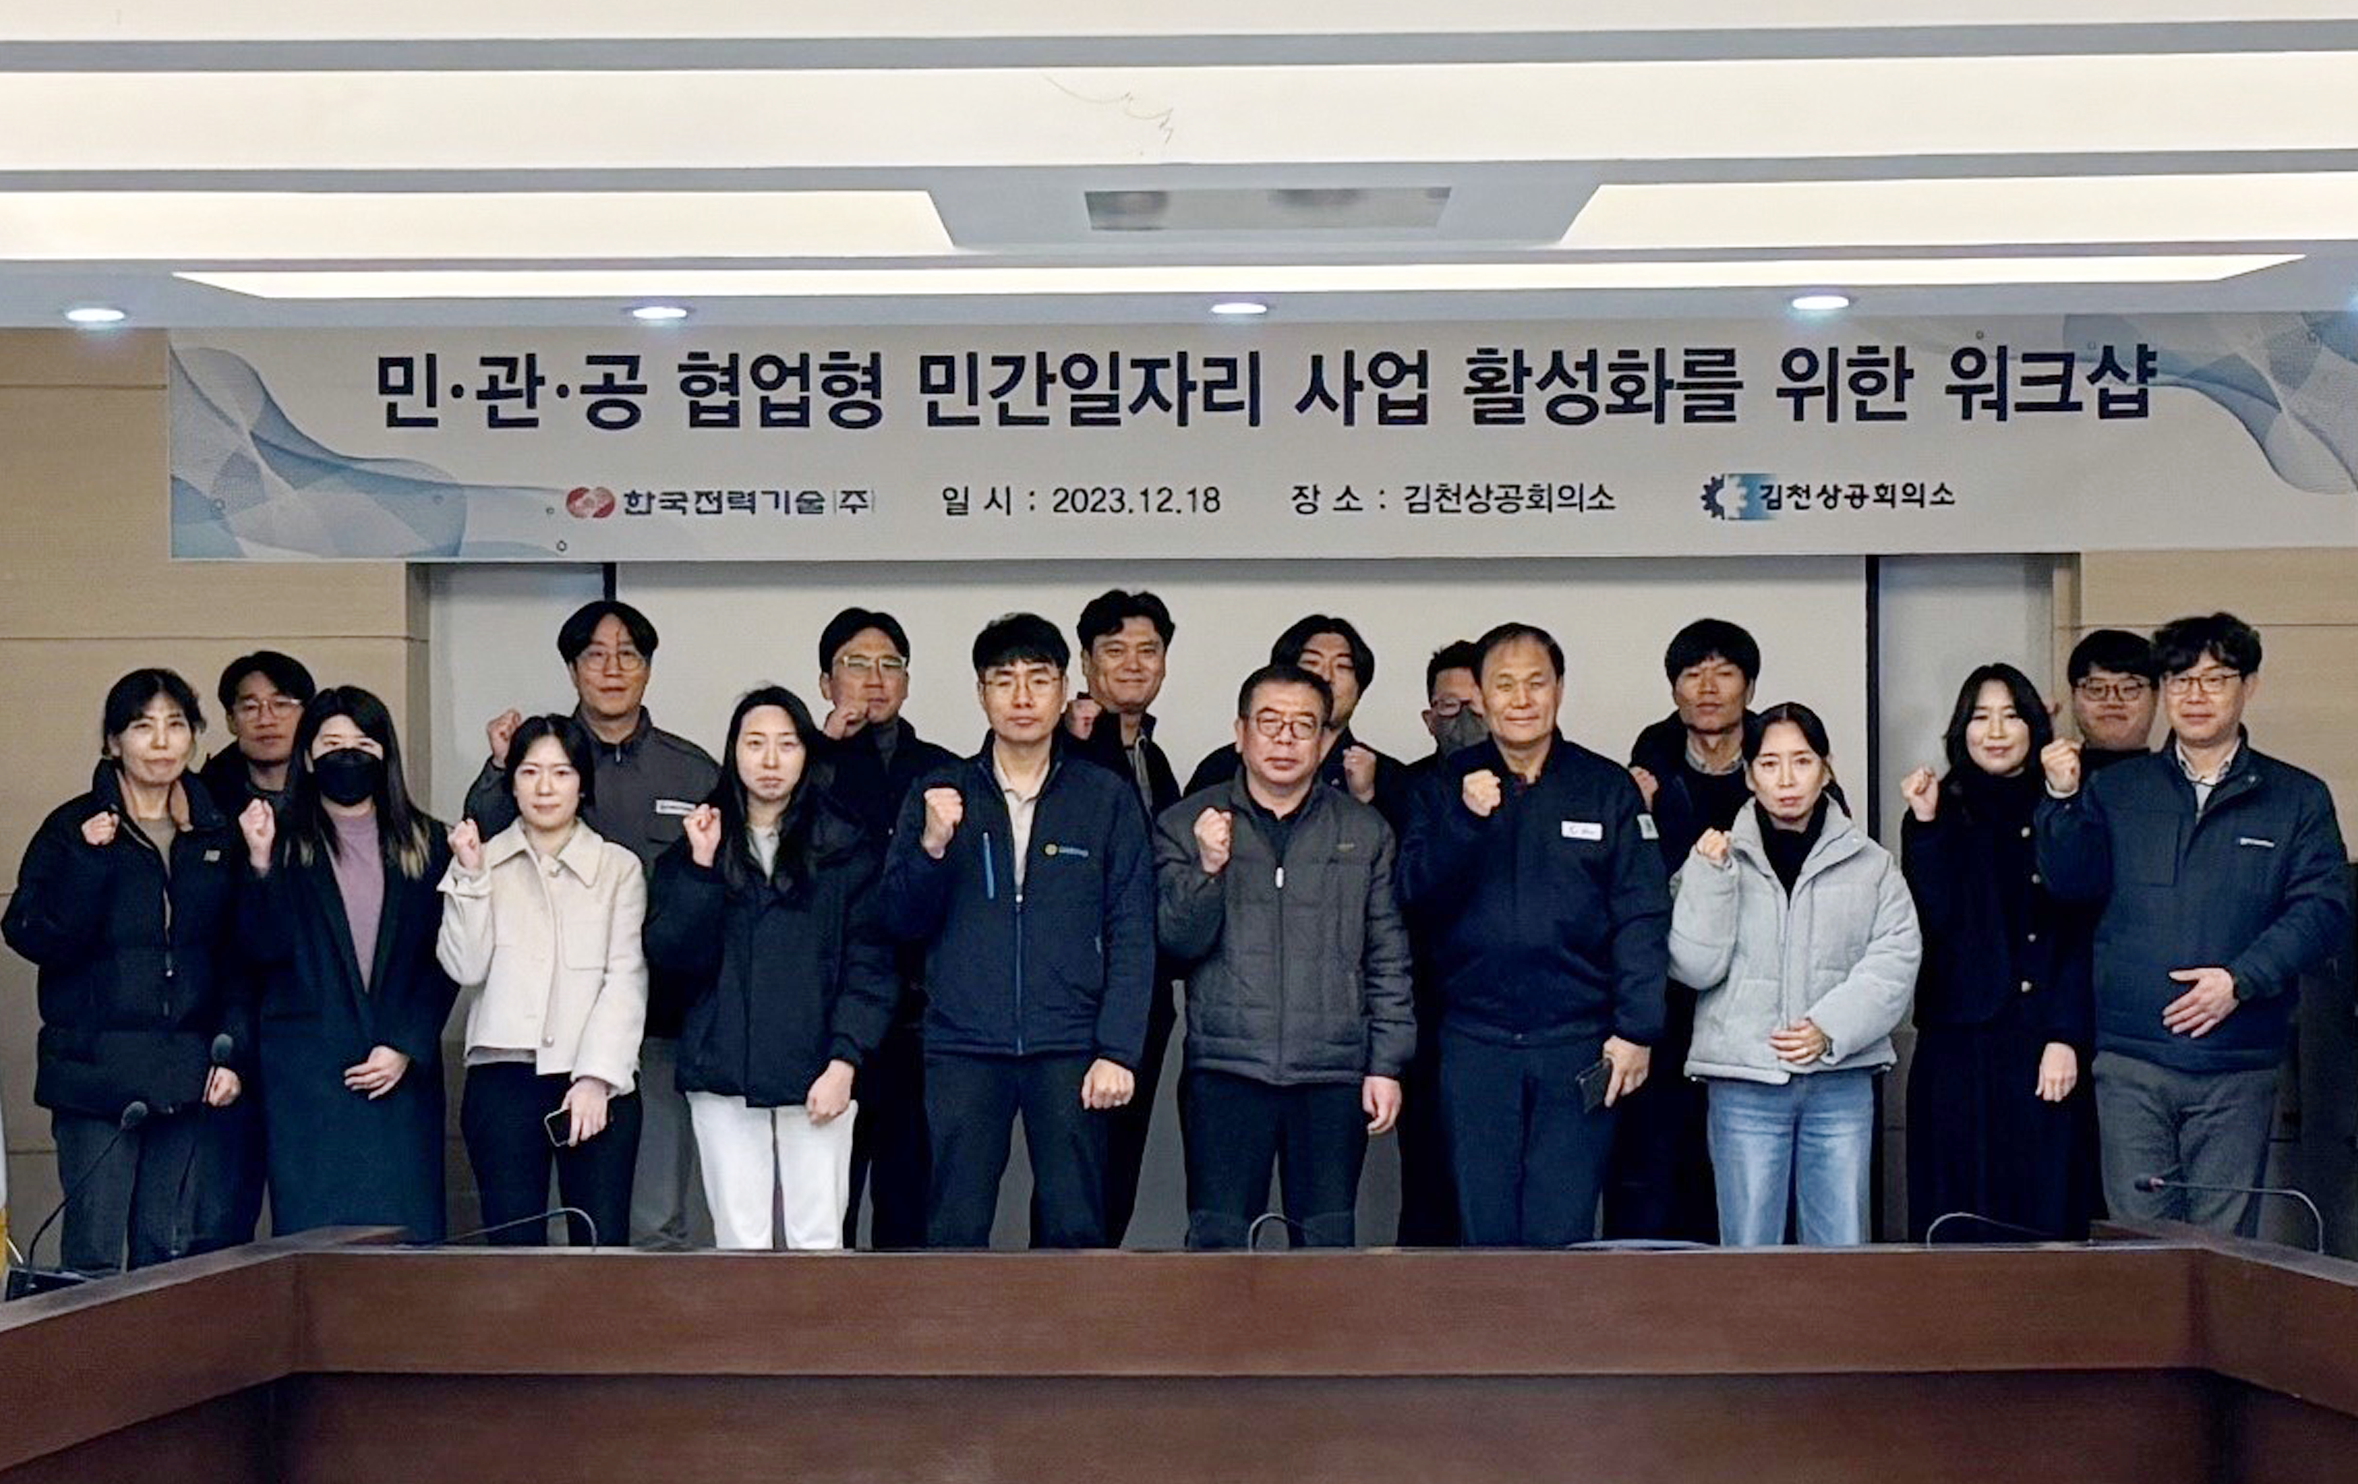 민․관․공 협업형 민간 일자리 사업 활성화 워크샵 개최